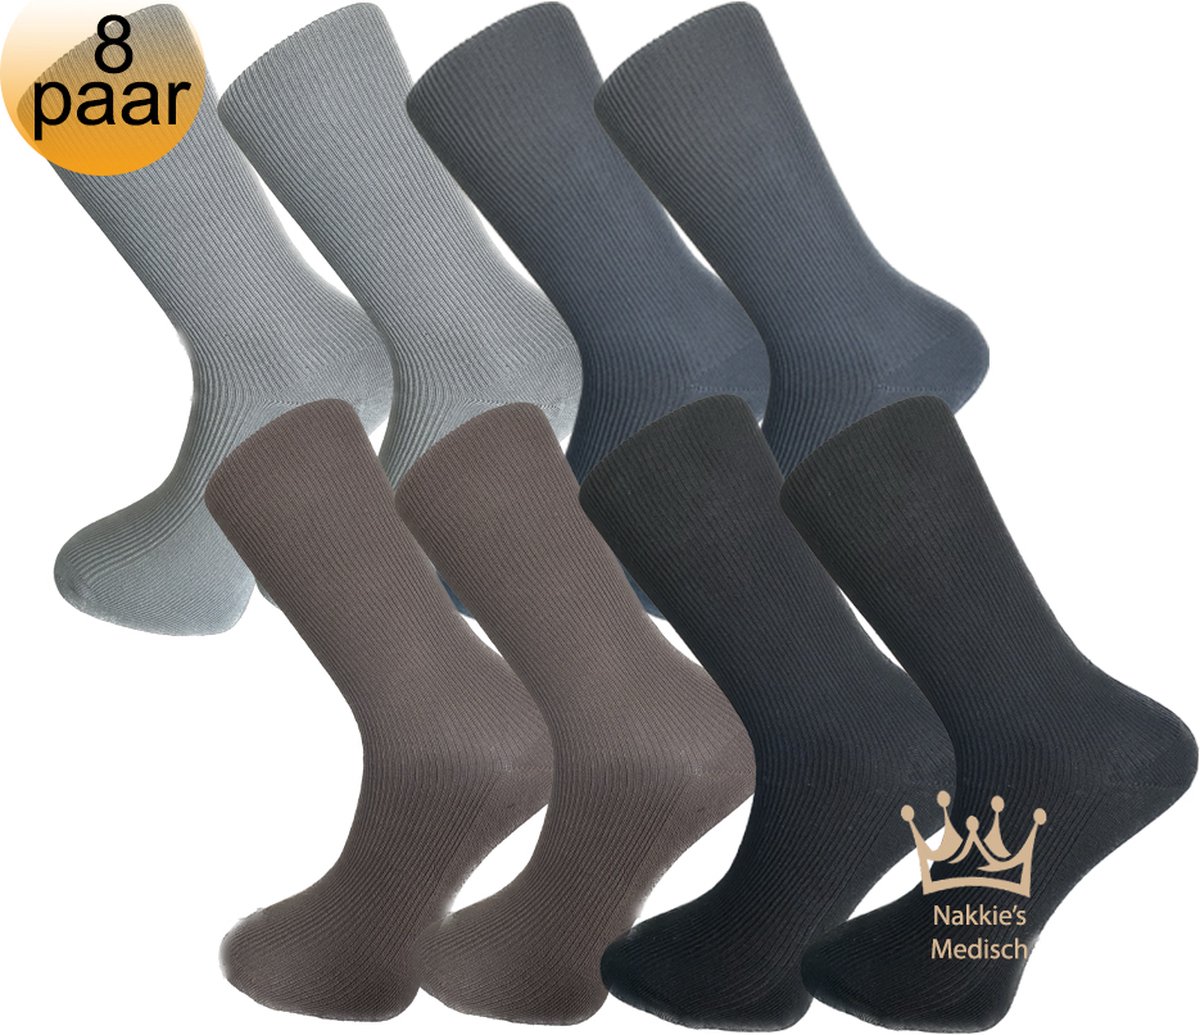 Medische sokken - 100% katoen - 8 paar - Maat 39/42 - Grijs, Antraciet, Bruin en Zwart